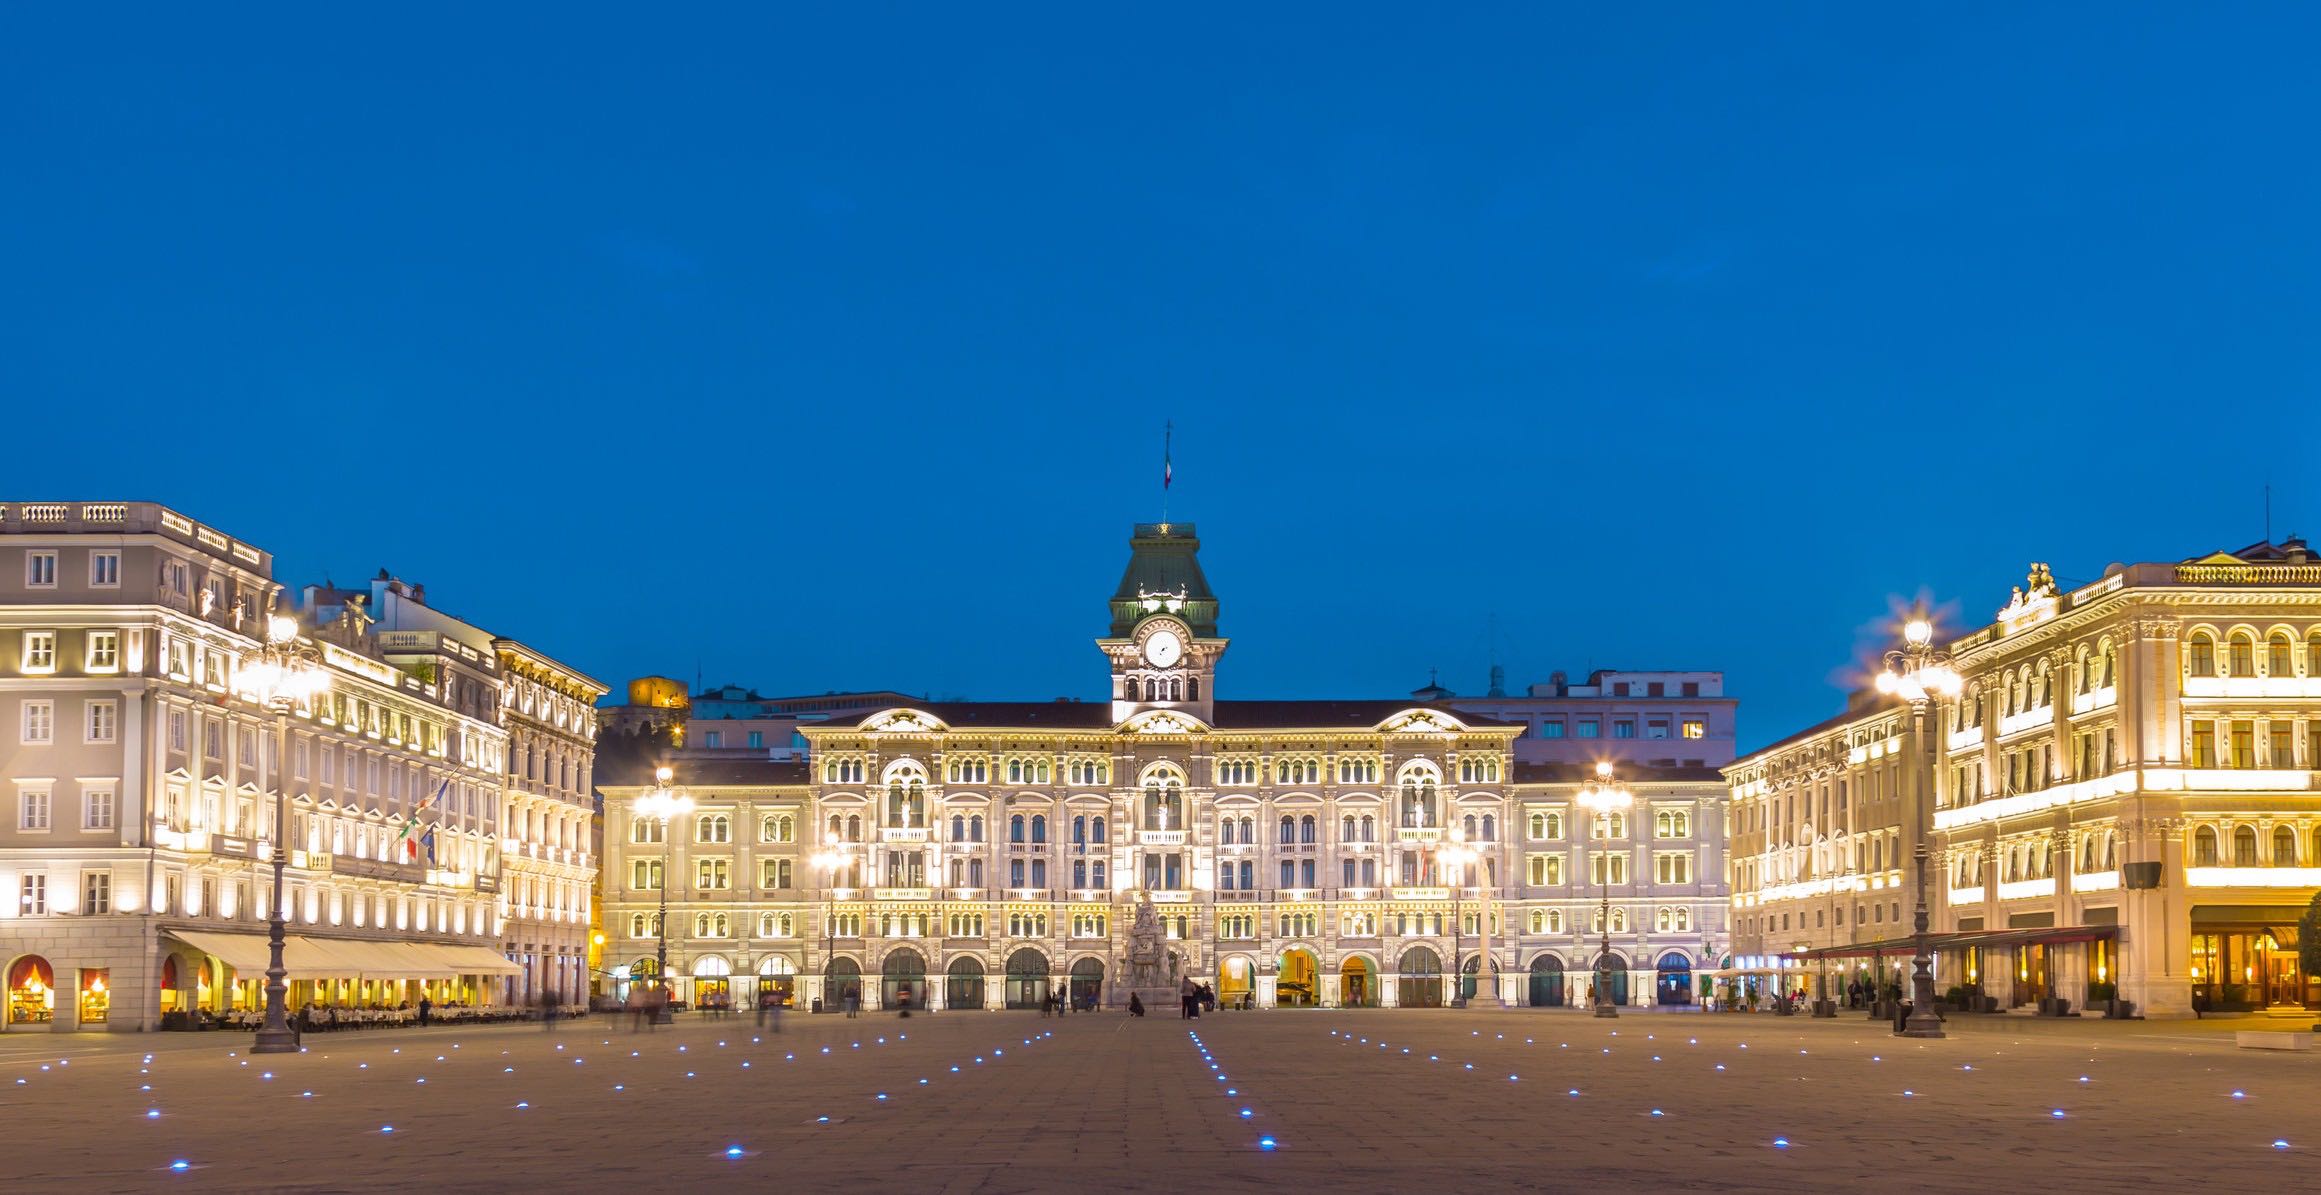 Il palazzo del municipio in Piazza Unità d'Italia a Trieste illuminata al crepuscolo. Credit: Kasto/depositphotos. 